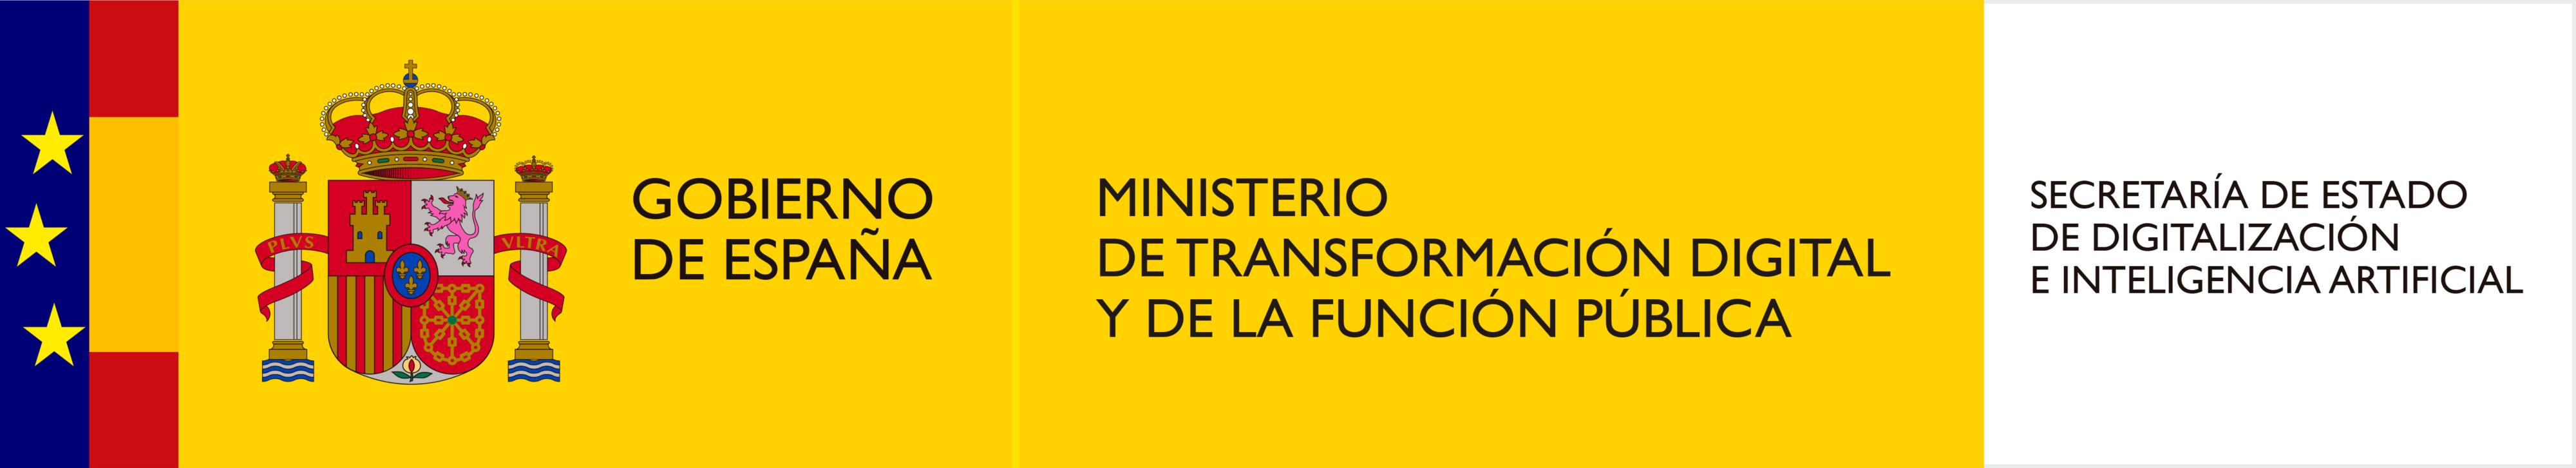 Logo del ministerio de transformación digital